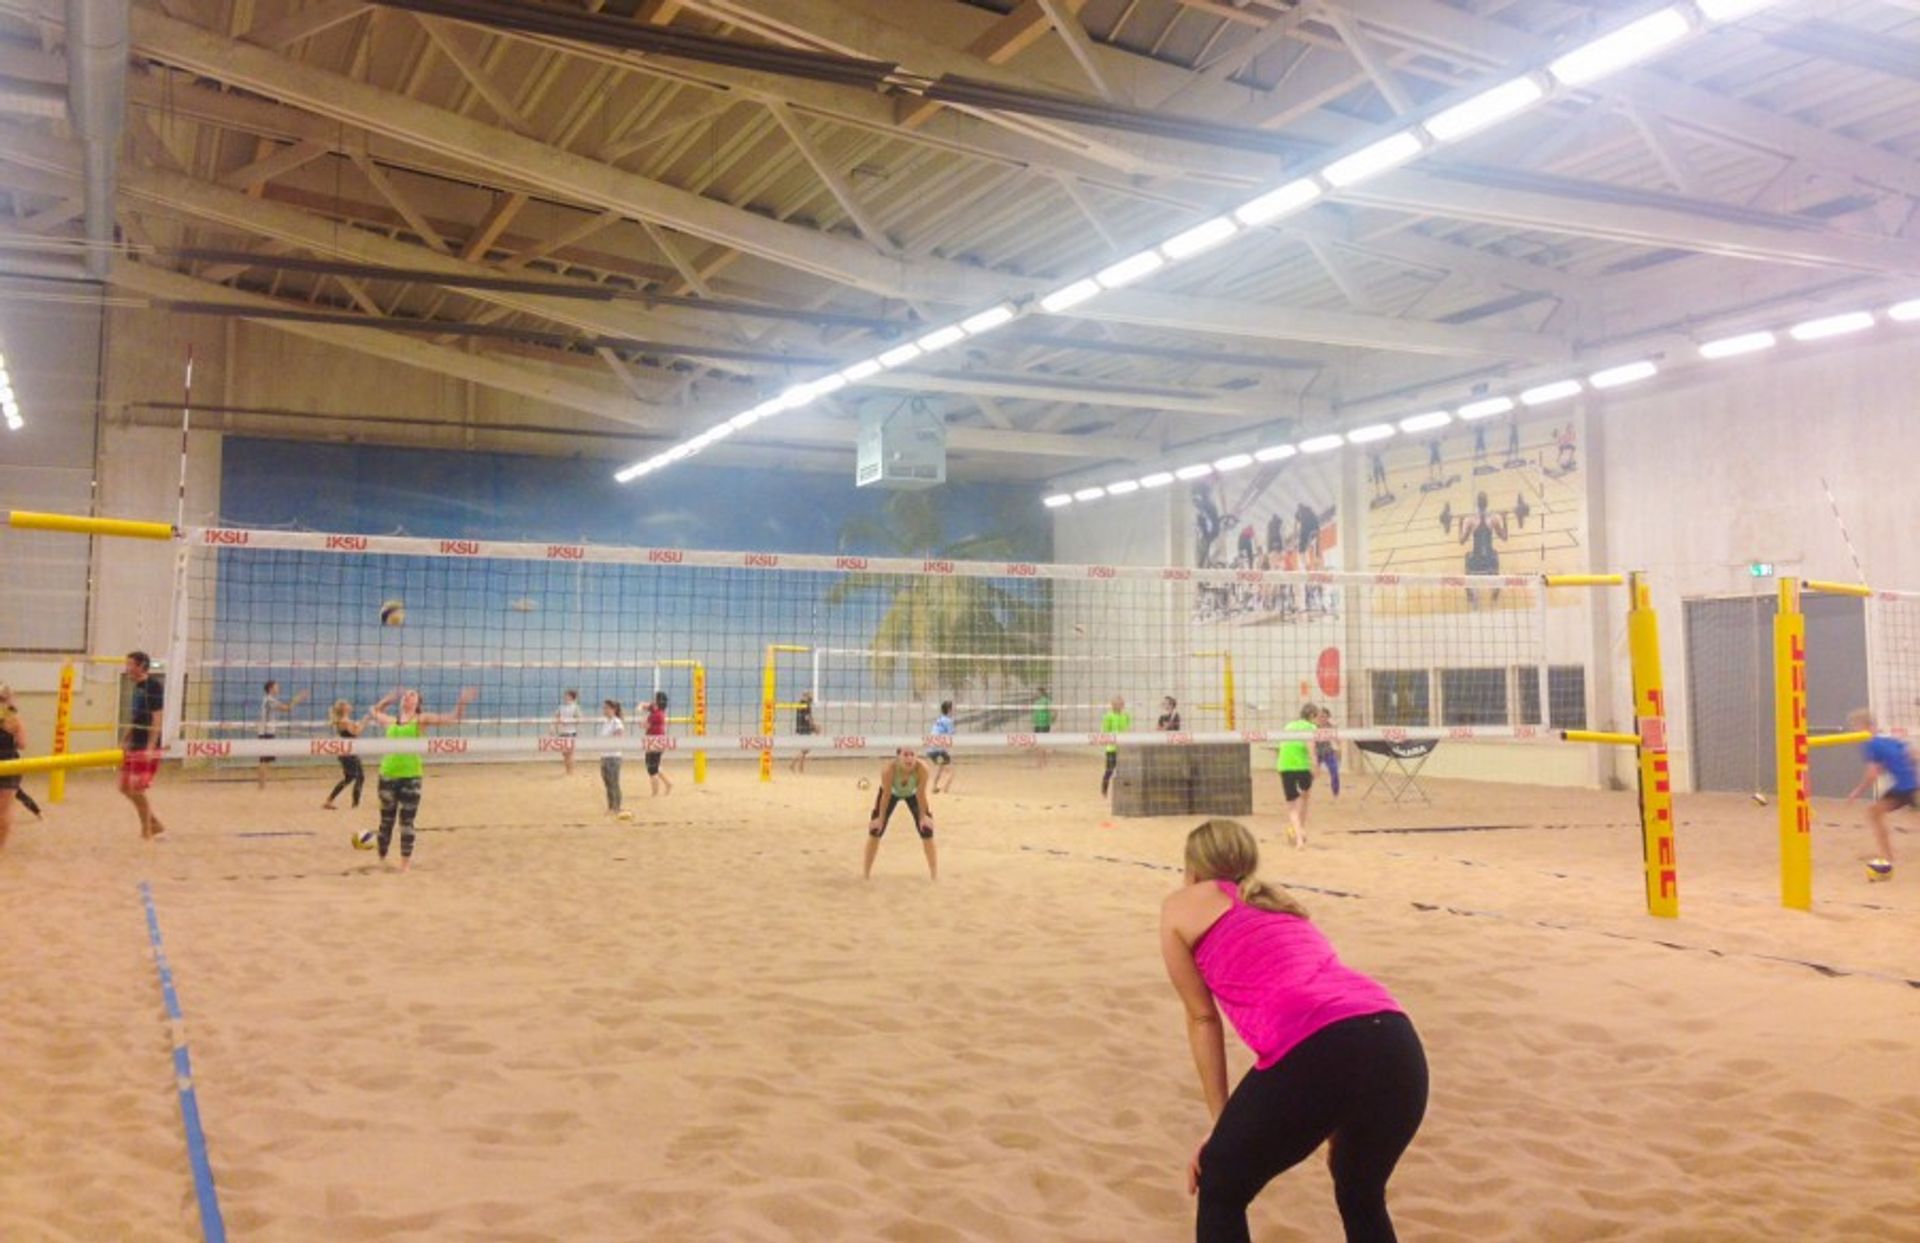 Indoor beach volleyball at Iksu sport